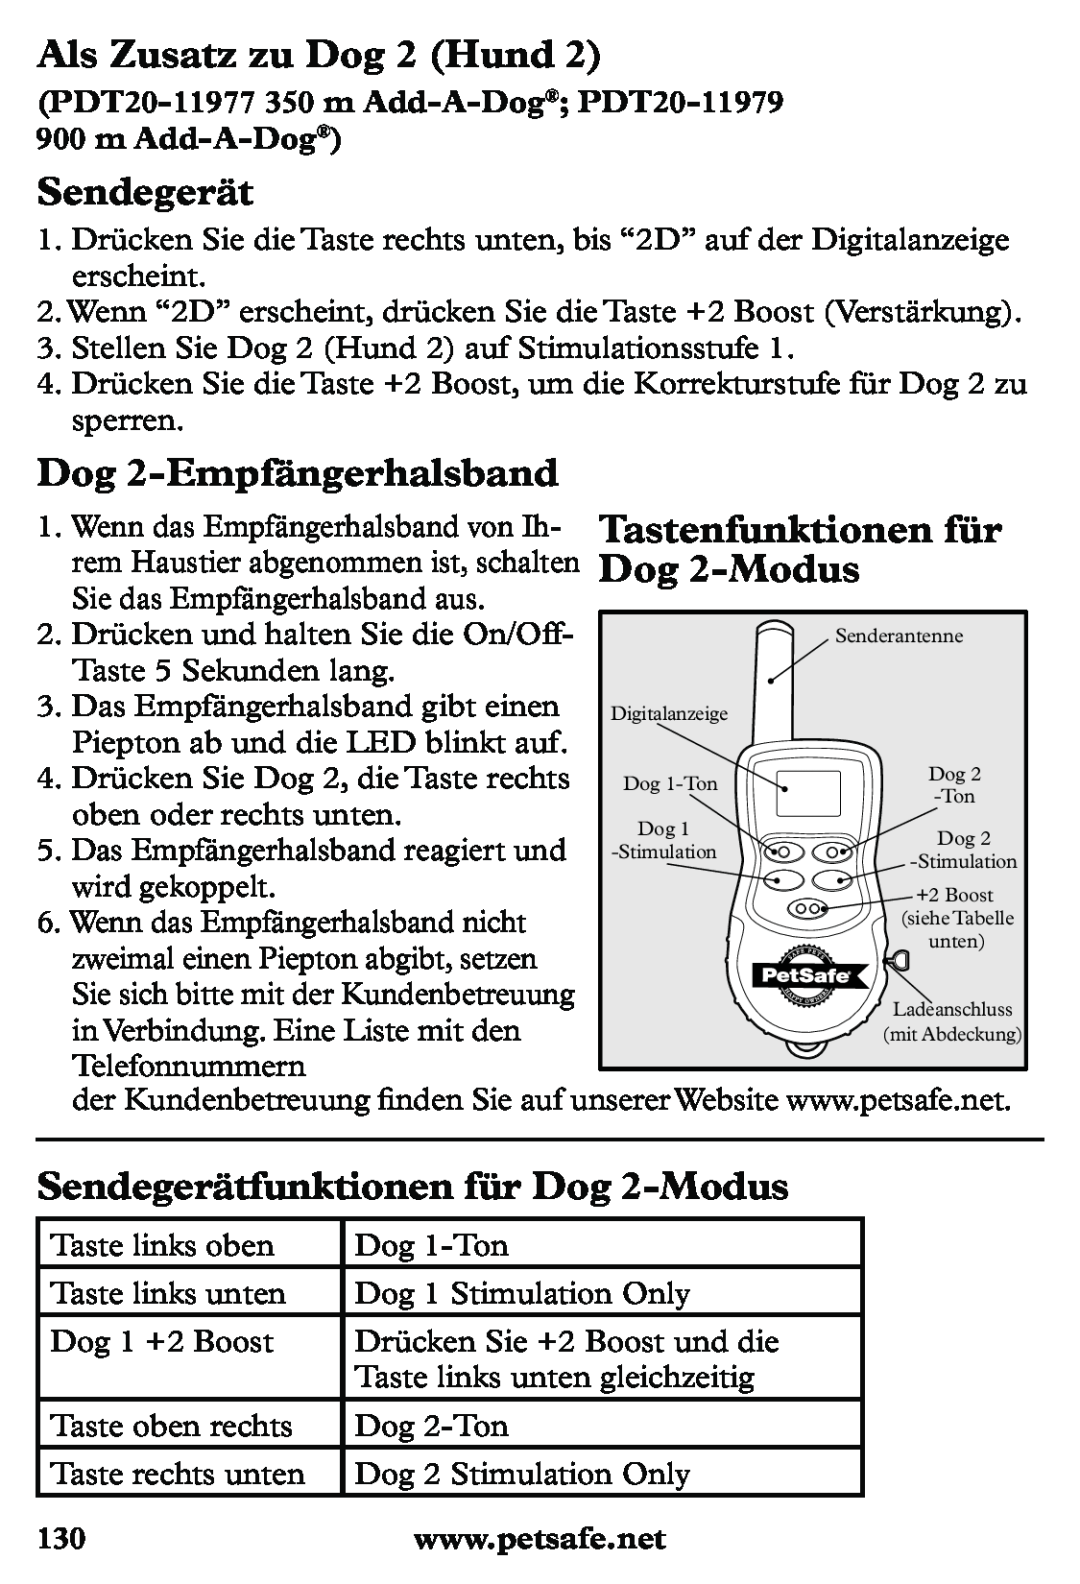 Petsafe PDT20-11939 Als Zusatz zu Dog 2 Hund, Dog 2-Empfängerhalsband, Sendegerätfunktionen für Dog 2-Modus 